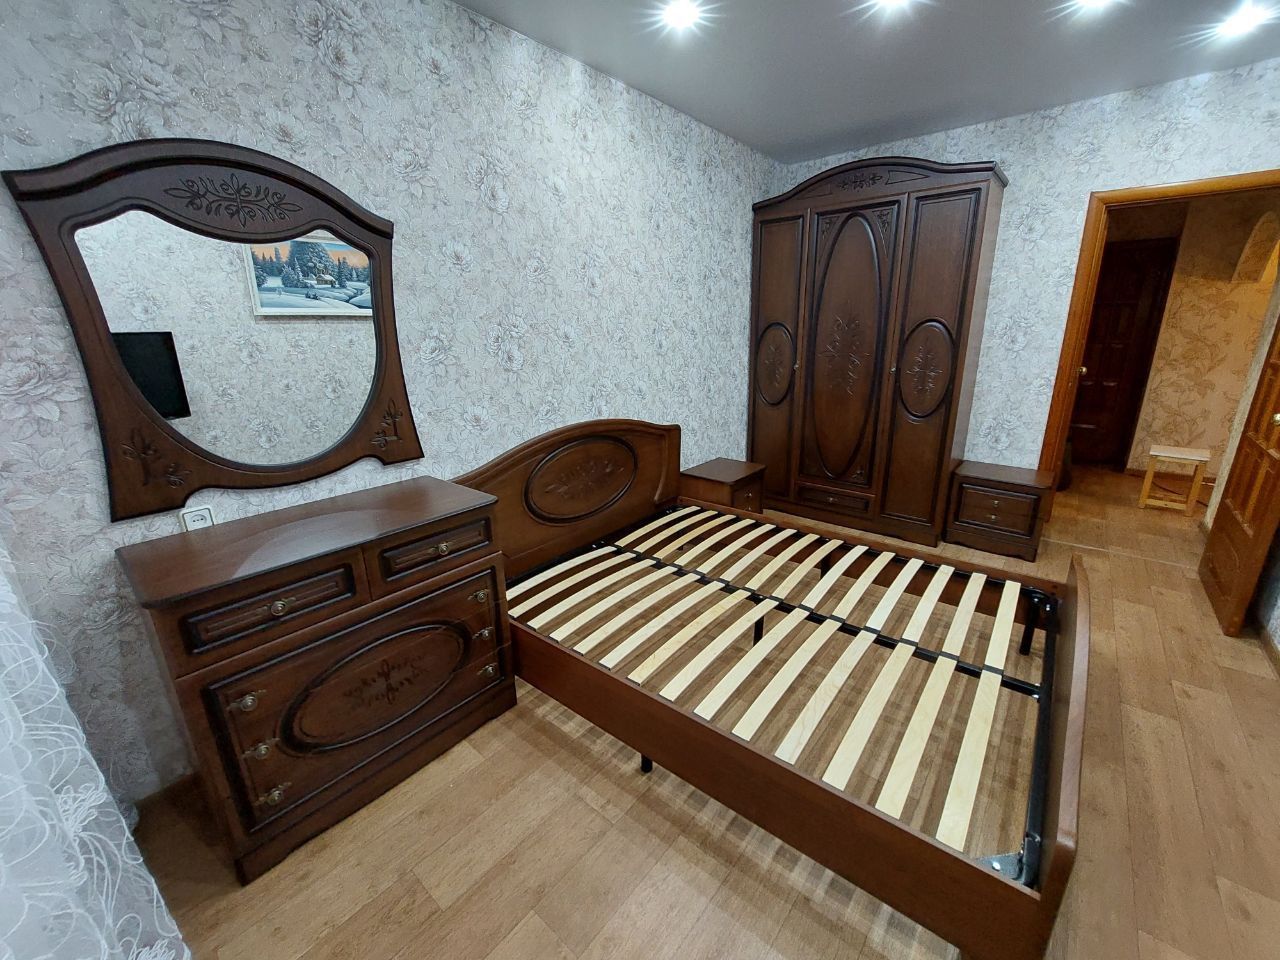 Двуспальная кровать "Натали" 140х200 с подъемным механизмом цвет клен / ясень бежевый изножье низкое